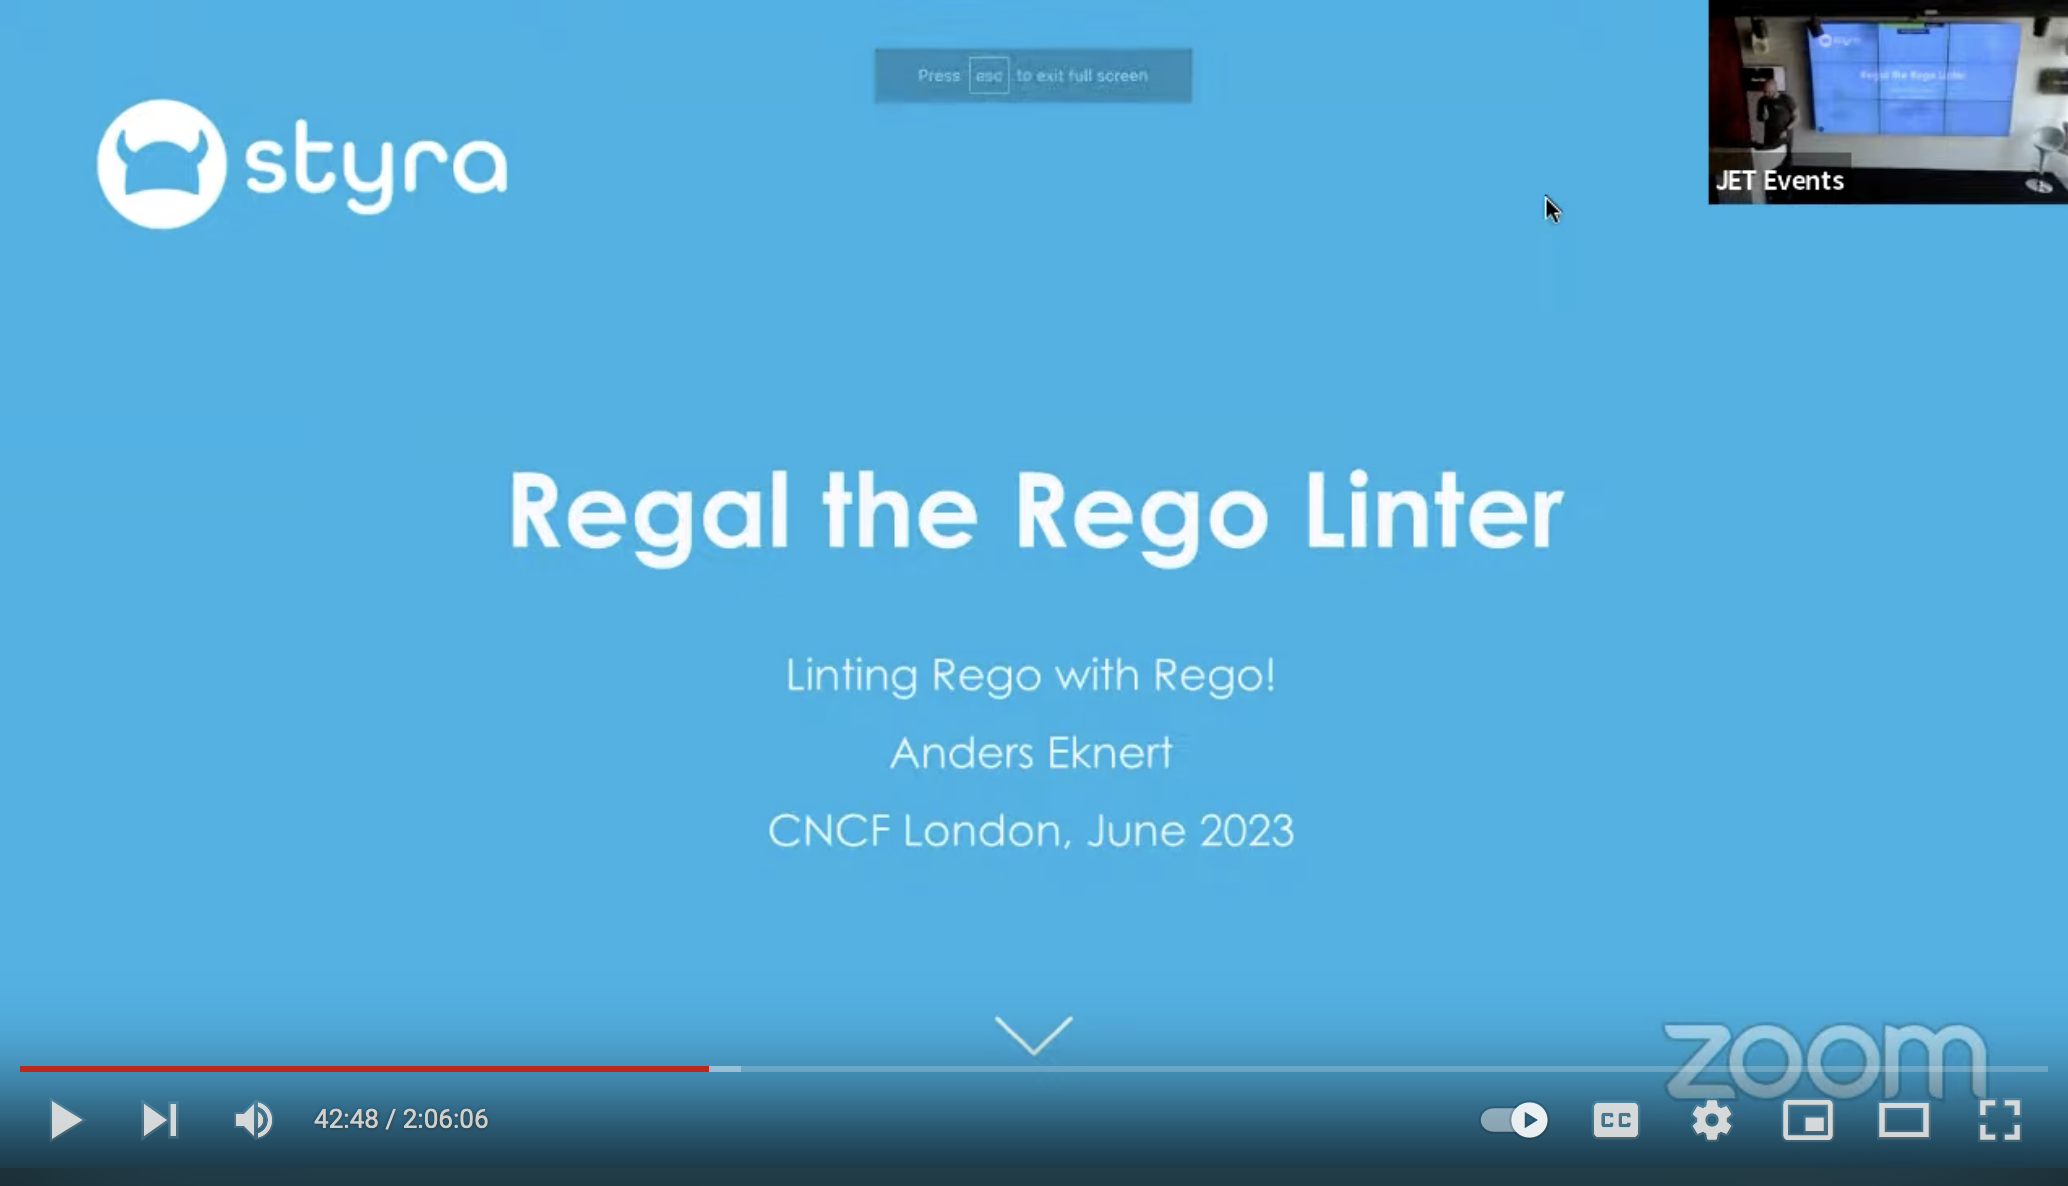 Regal the Rego Linter